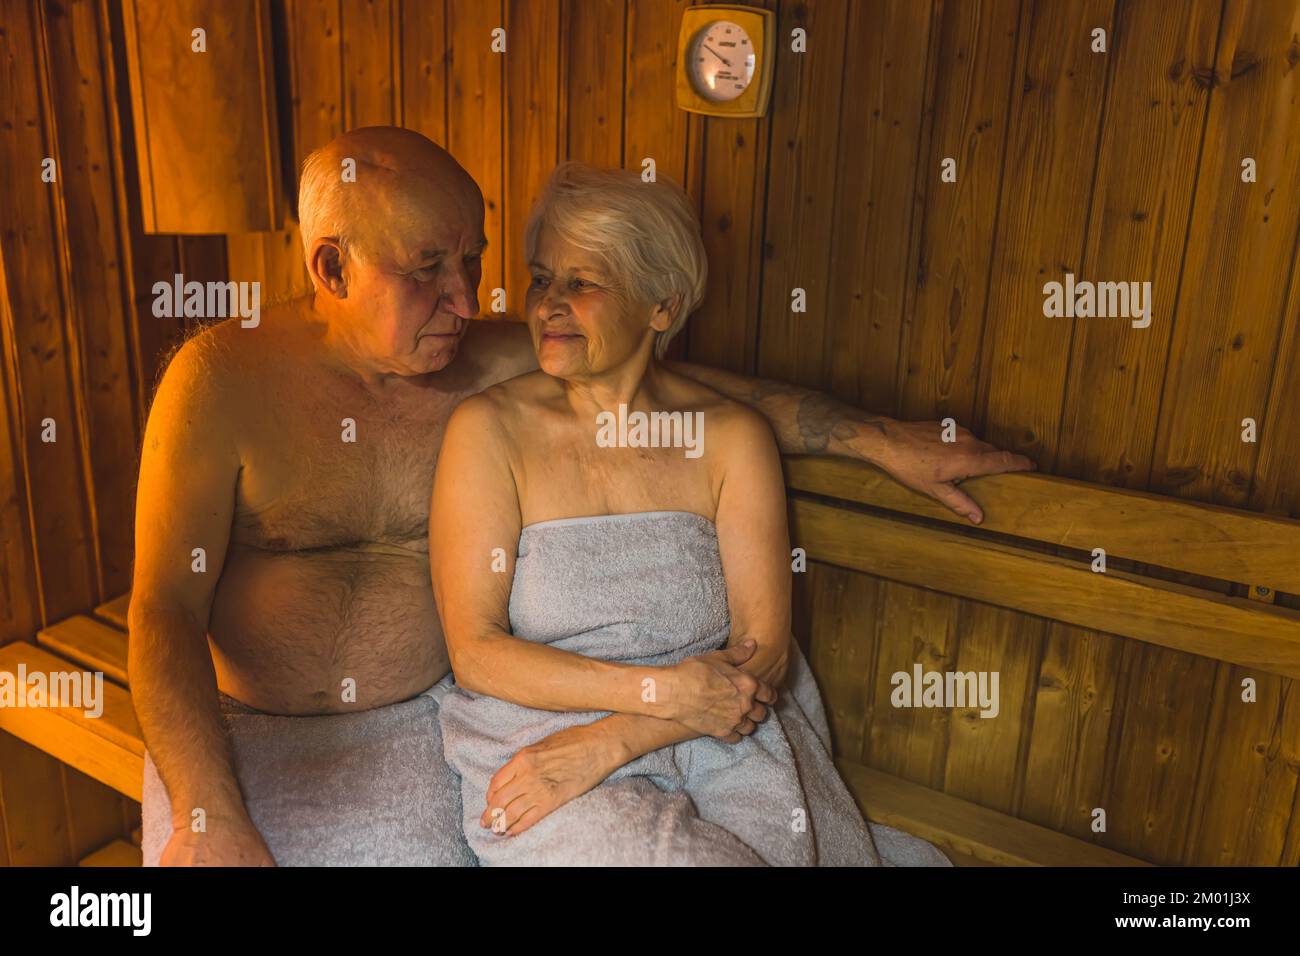 Caucasico sposato eterosessuale coppia anziana seduta vicino l'uno all'altro in sauna di legno. Concetto di benessere e relax. Foto di alta qualità Foto Stock